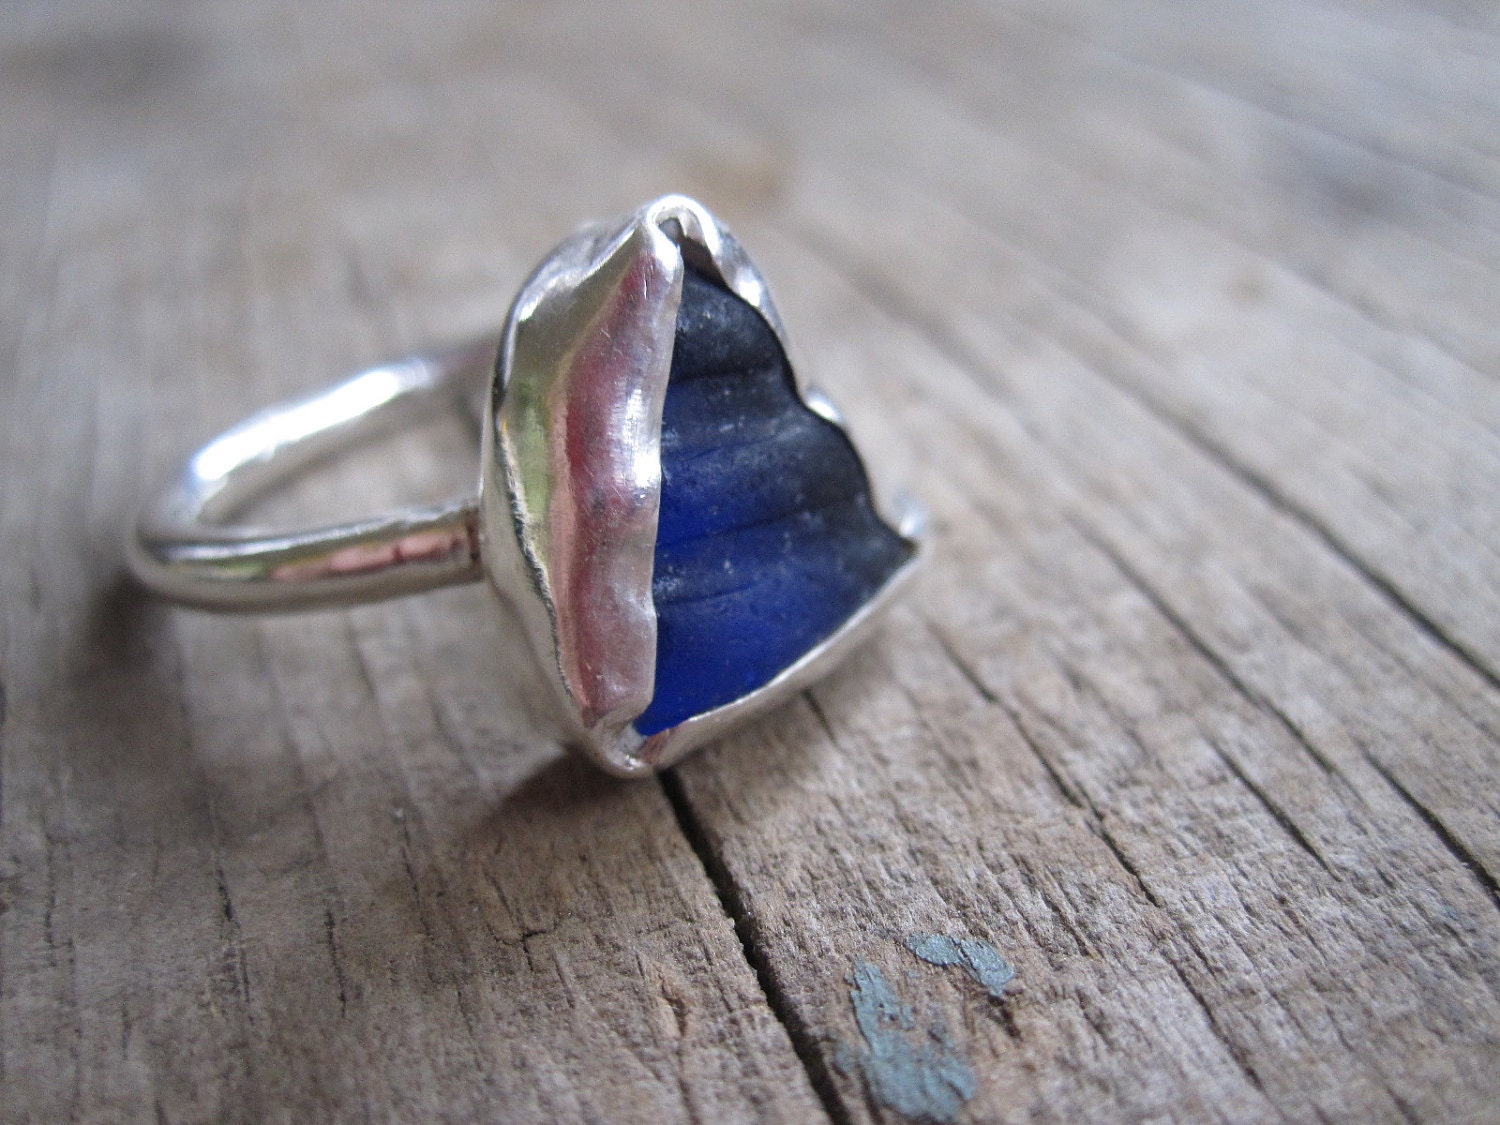 Cobalt Seaglass & Sterling Ring Handmade etsy metal jewelry - JudithGayleDesigns